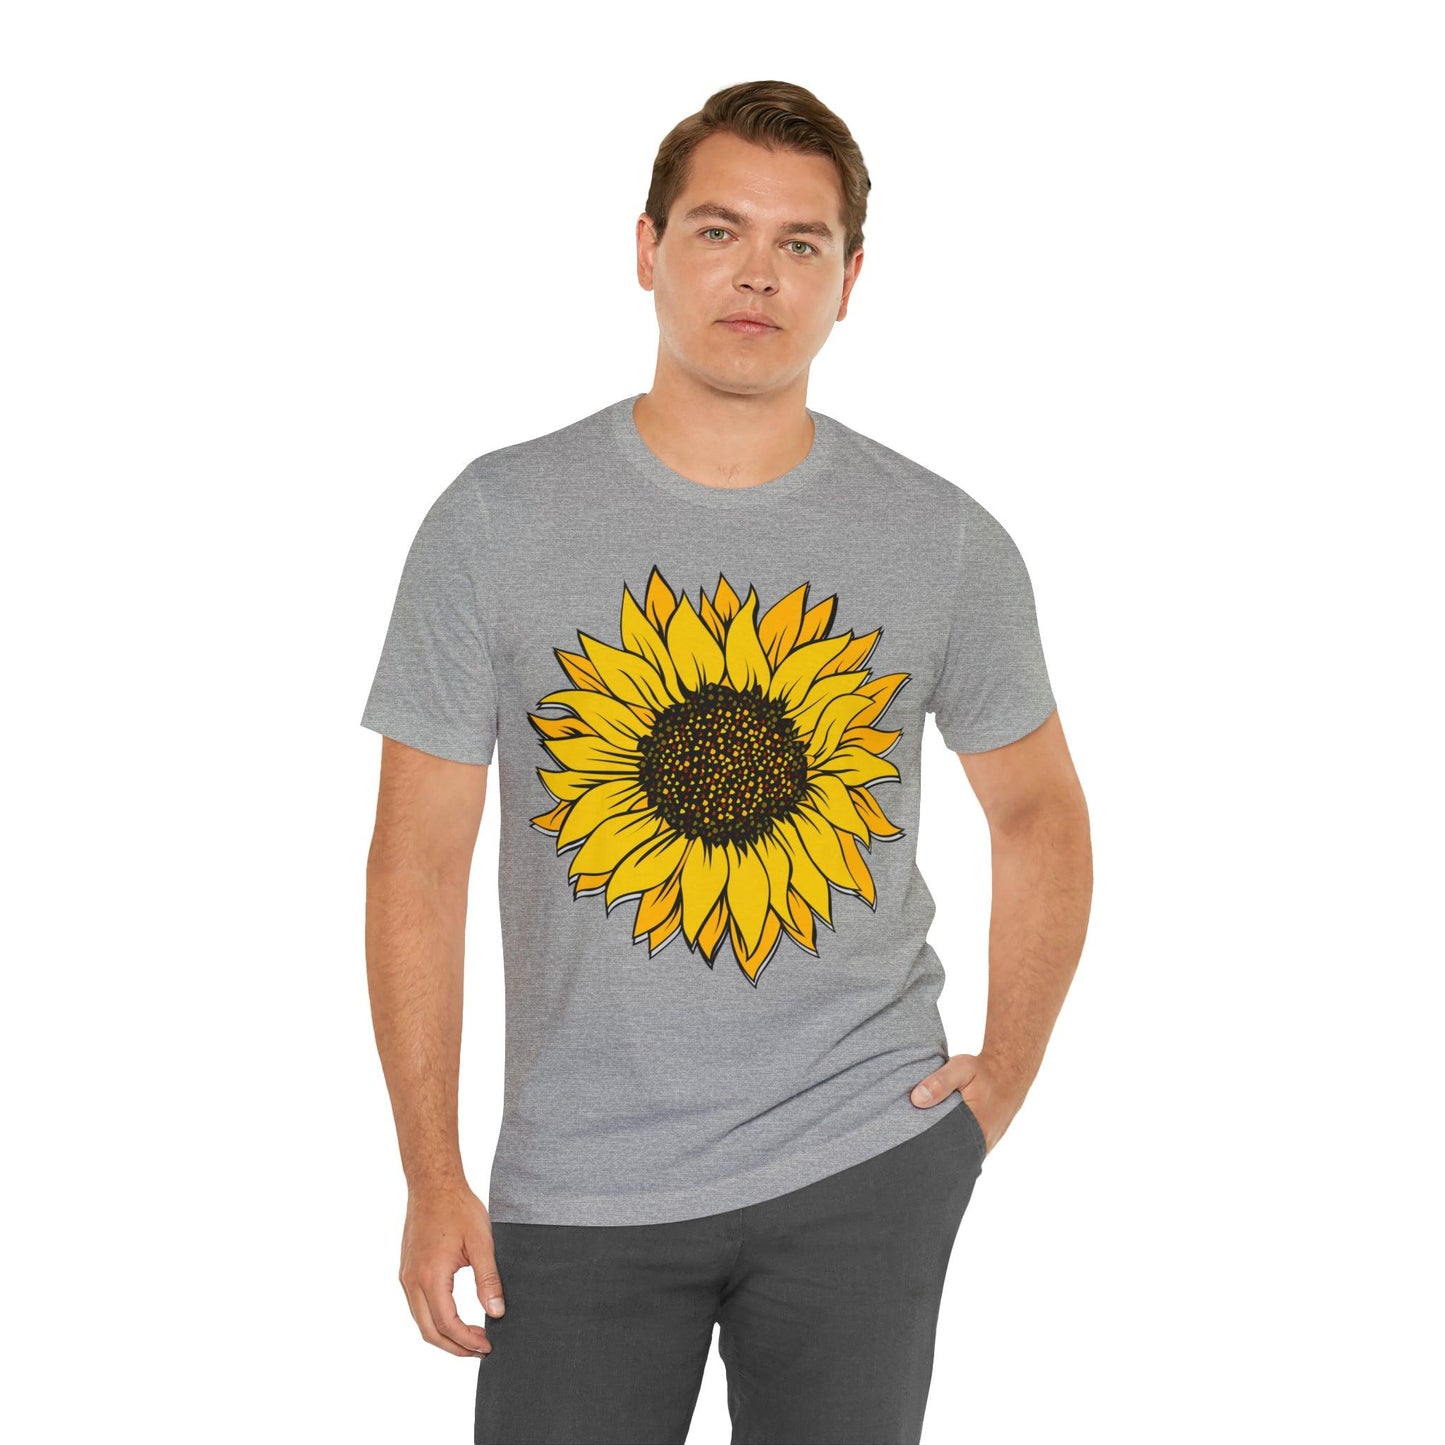 Sunflower Shirt, Floral Tee Shirt, Flower Shirt, Garden Shirt, Womens Fall Summer Shirt Sunshine Tee, Gift for Gardener, Nature lover shirt